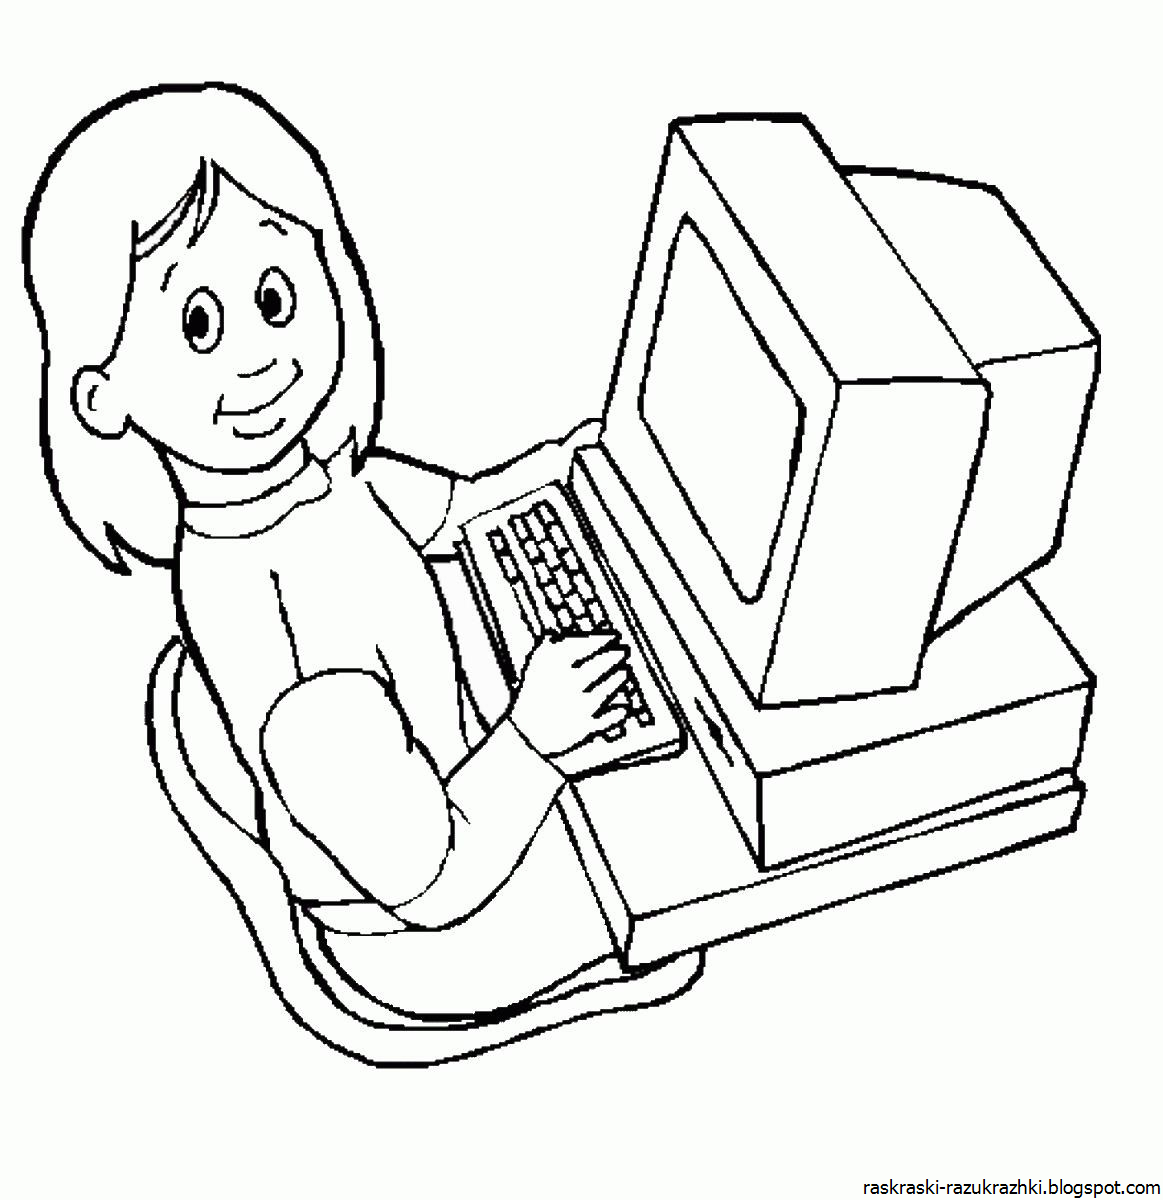 Компьютер раскраска для детей. Компьютер для раскрашивания для детей. Рисование на компьютере для детей. Раскраска для детей накомпюторе. Бесплатные раскраски на компьютер